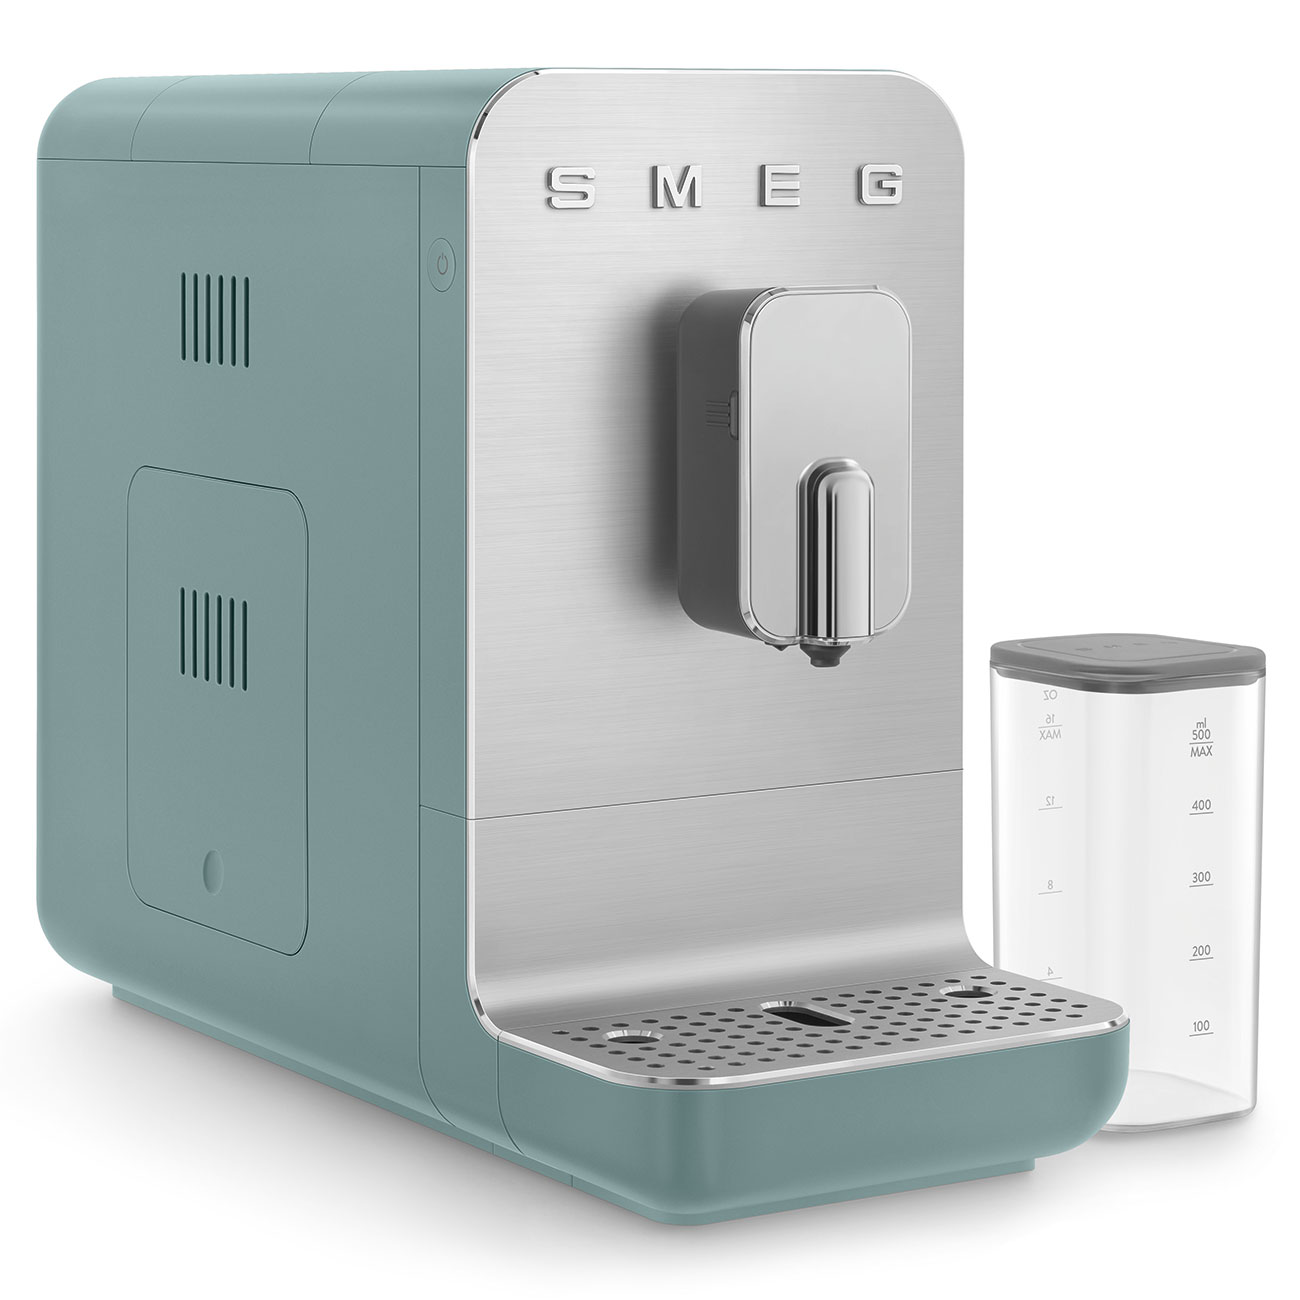 Cafetera Verde esmeralda Superautomática con sistema de leche integrado Smeg_3